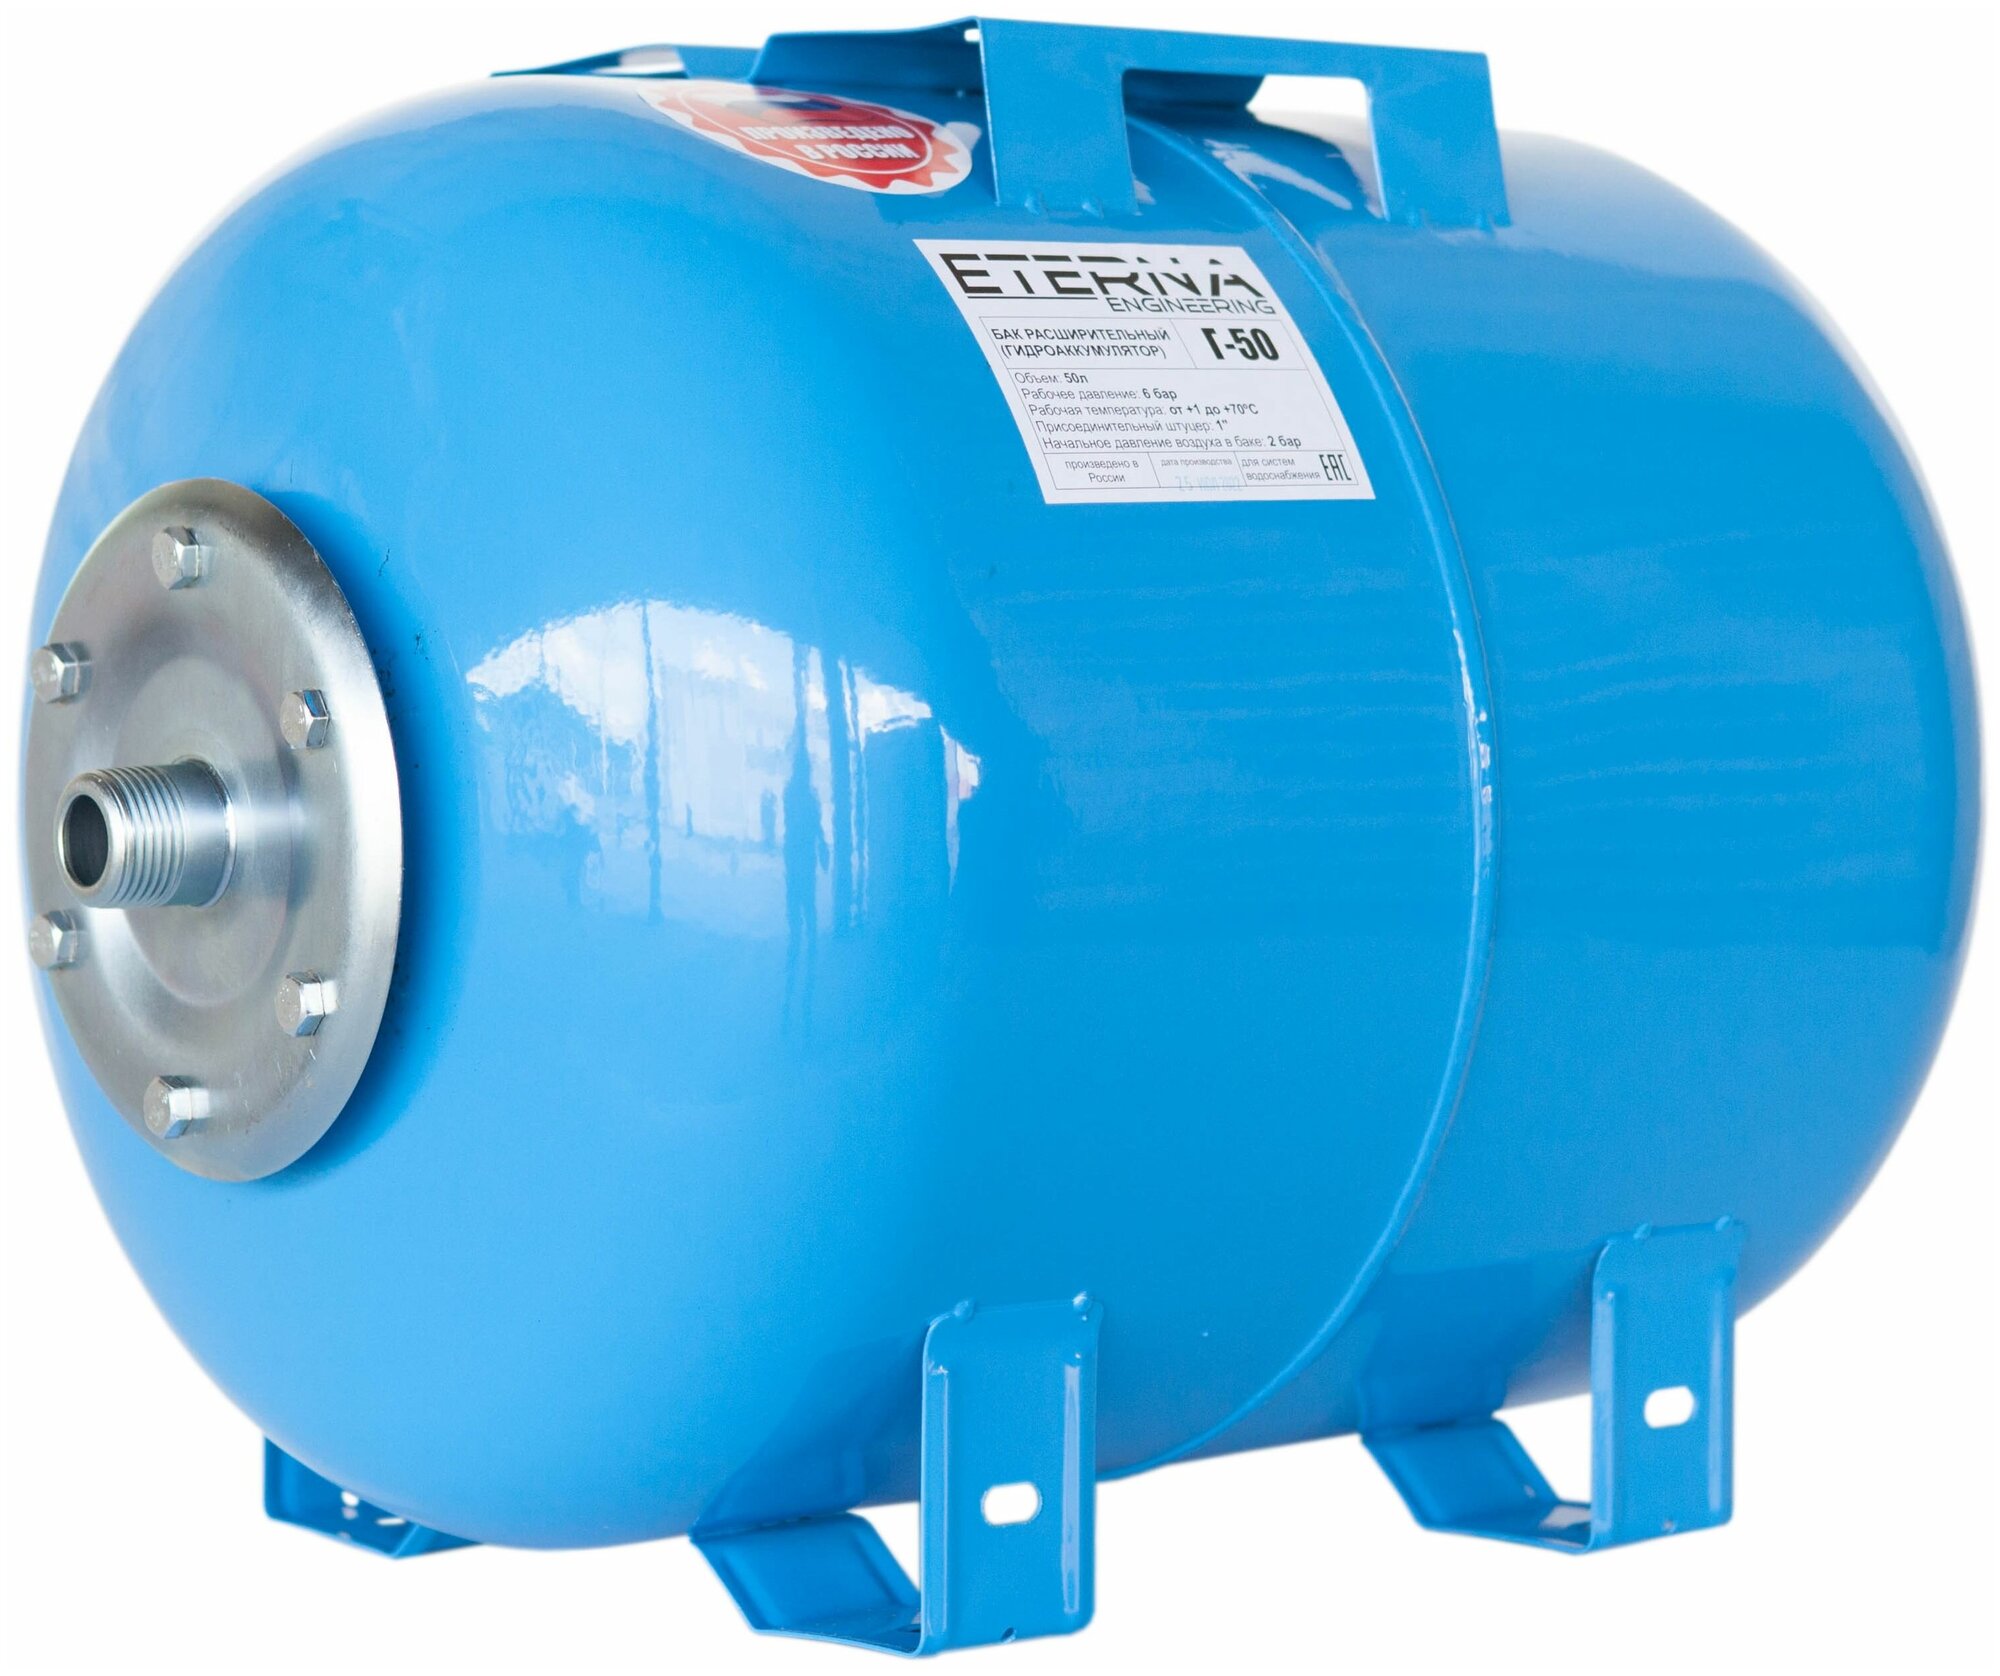 Гидроаккумулятор для водоснабжения ETERNA Г-50 (50 л, горизонтальный, оцинк. фланец)